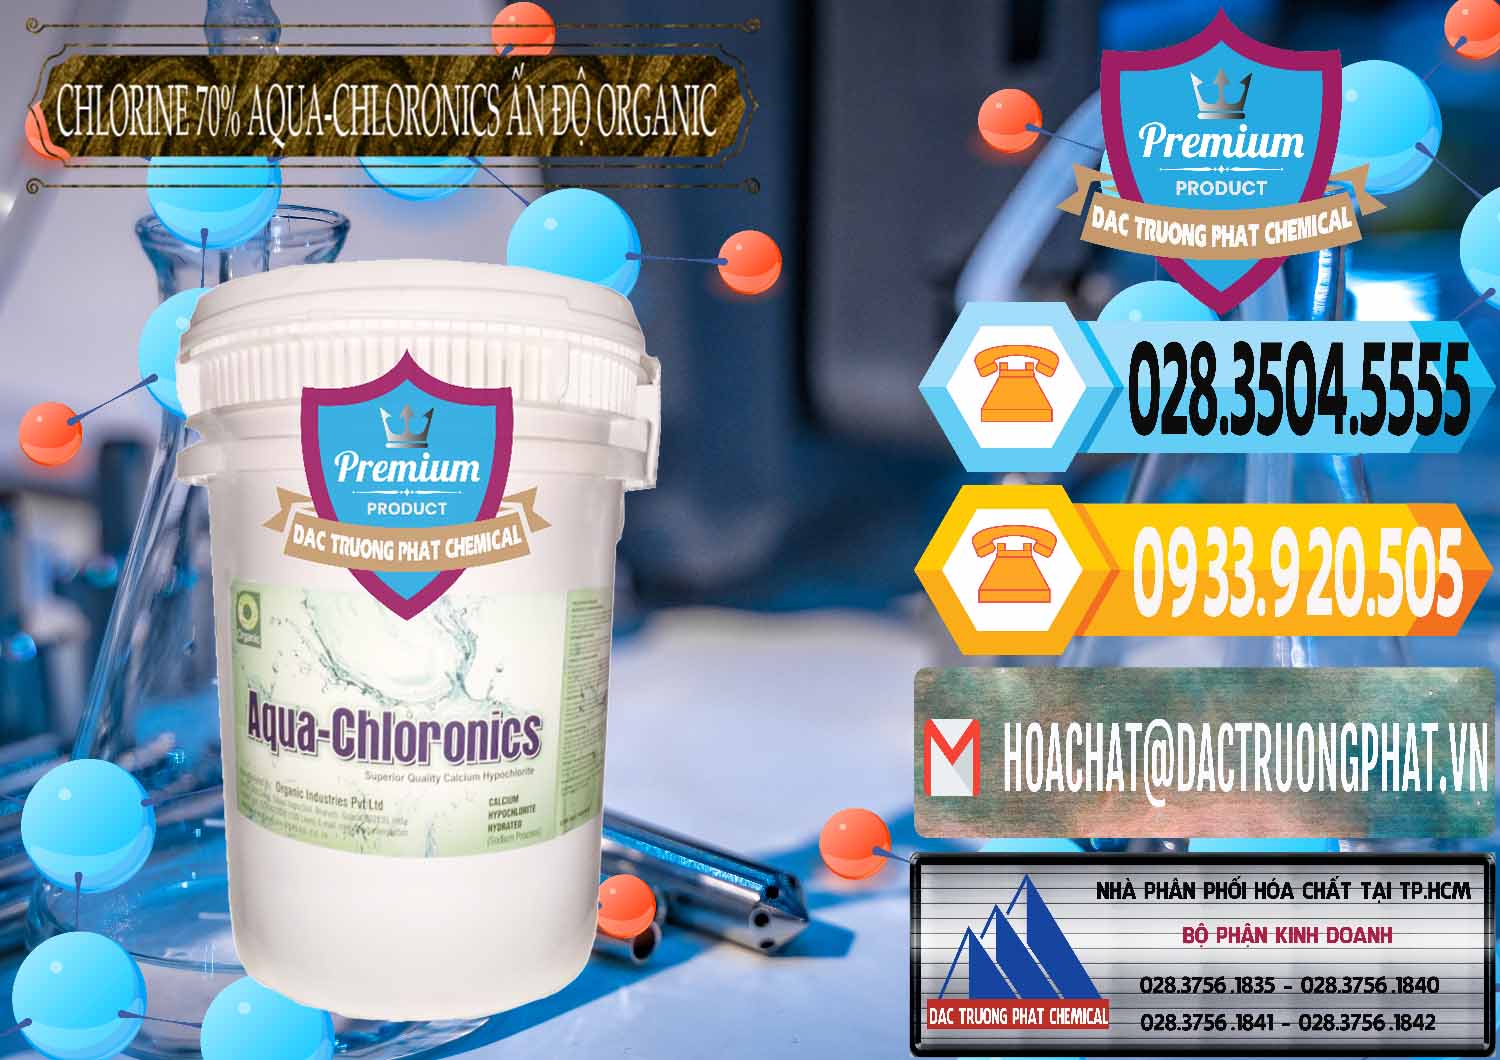 Công ty nhập khẩu _ bán Chlorine – Clorin 70% Aqua-Chloronics Ấn Độ Organic India - 0211 - Phân phối _ cung cấp hóa chất tại TP.HCM - hoachattayrua.net